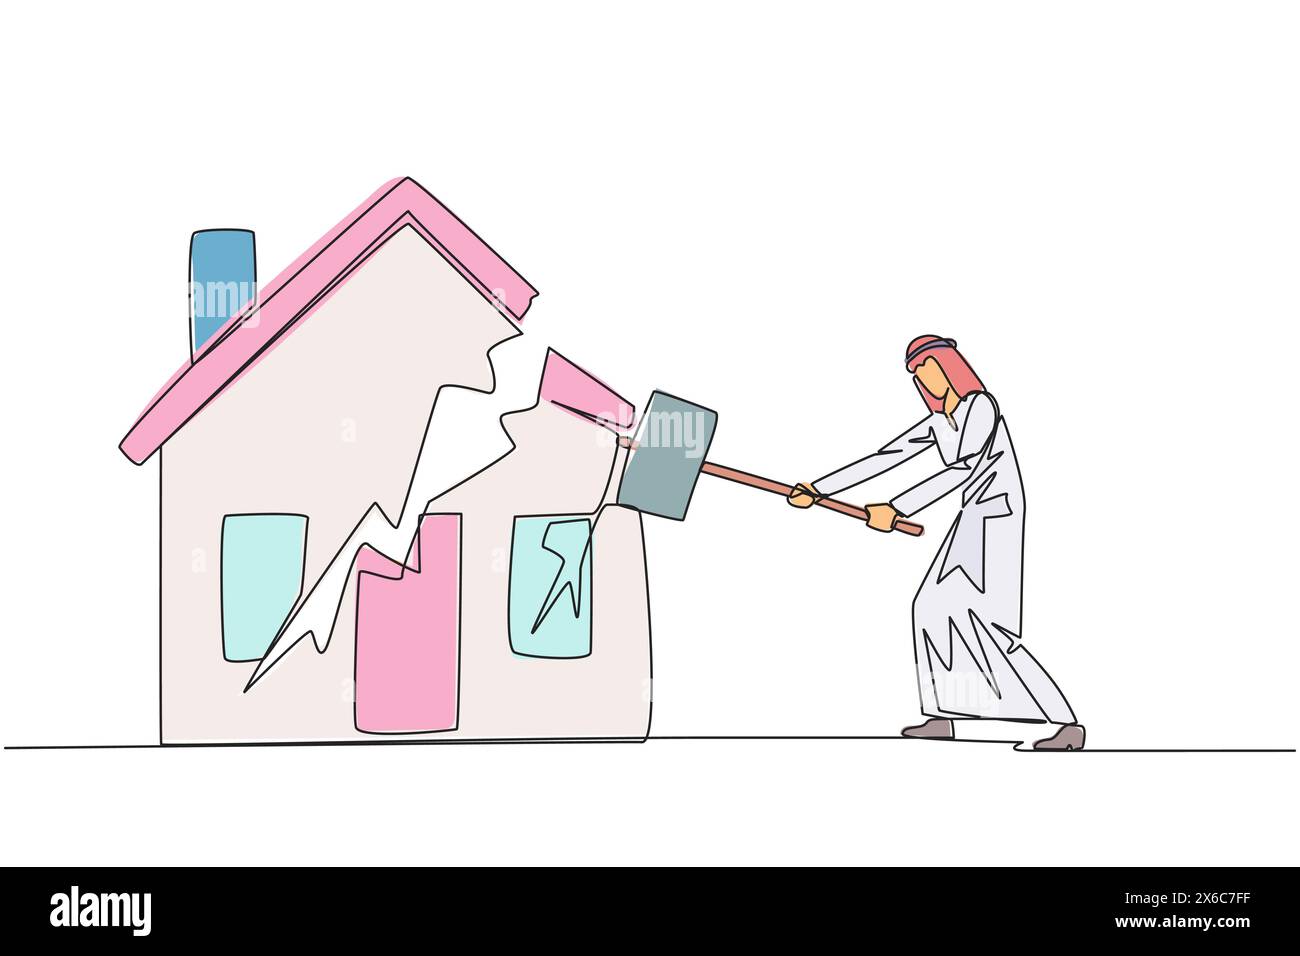 Simple une ligne dessinant homme d'affaires arabe se préparant à frapper maison miniature. Métaphore de la maison comme garantie de paiement. Échoue. La maison est partie. Bankru Illustration de Vecteur